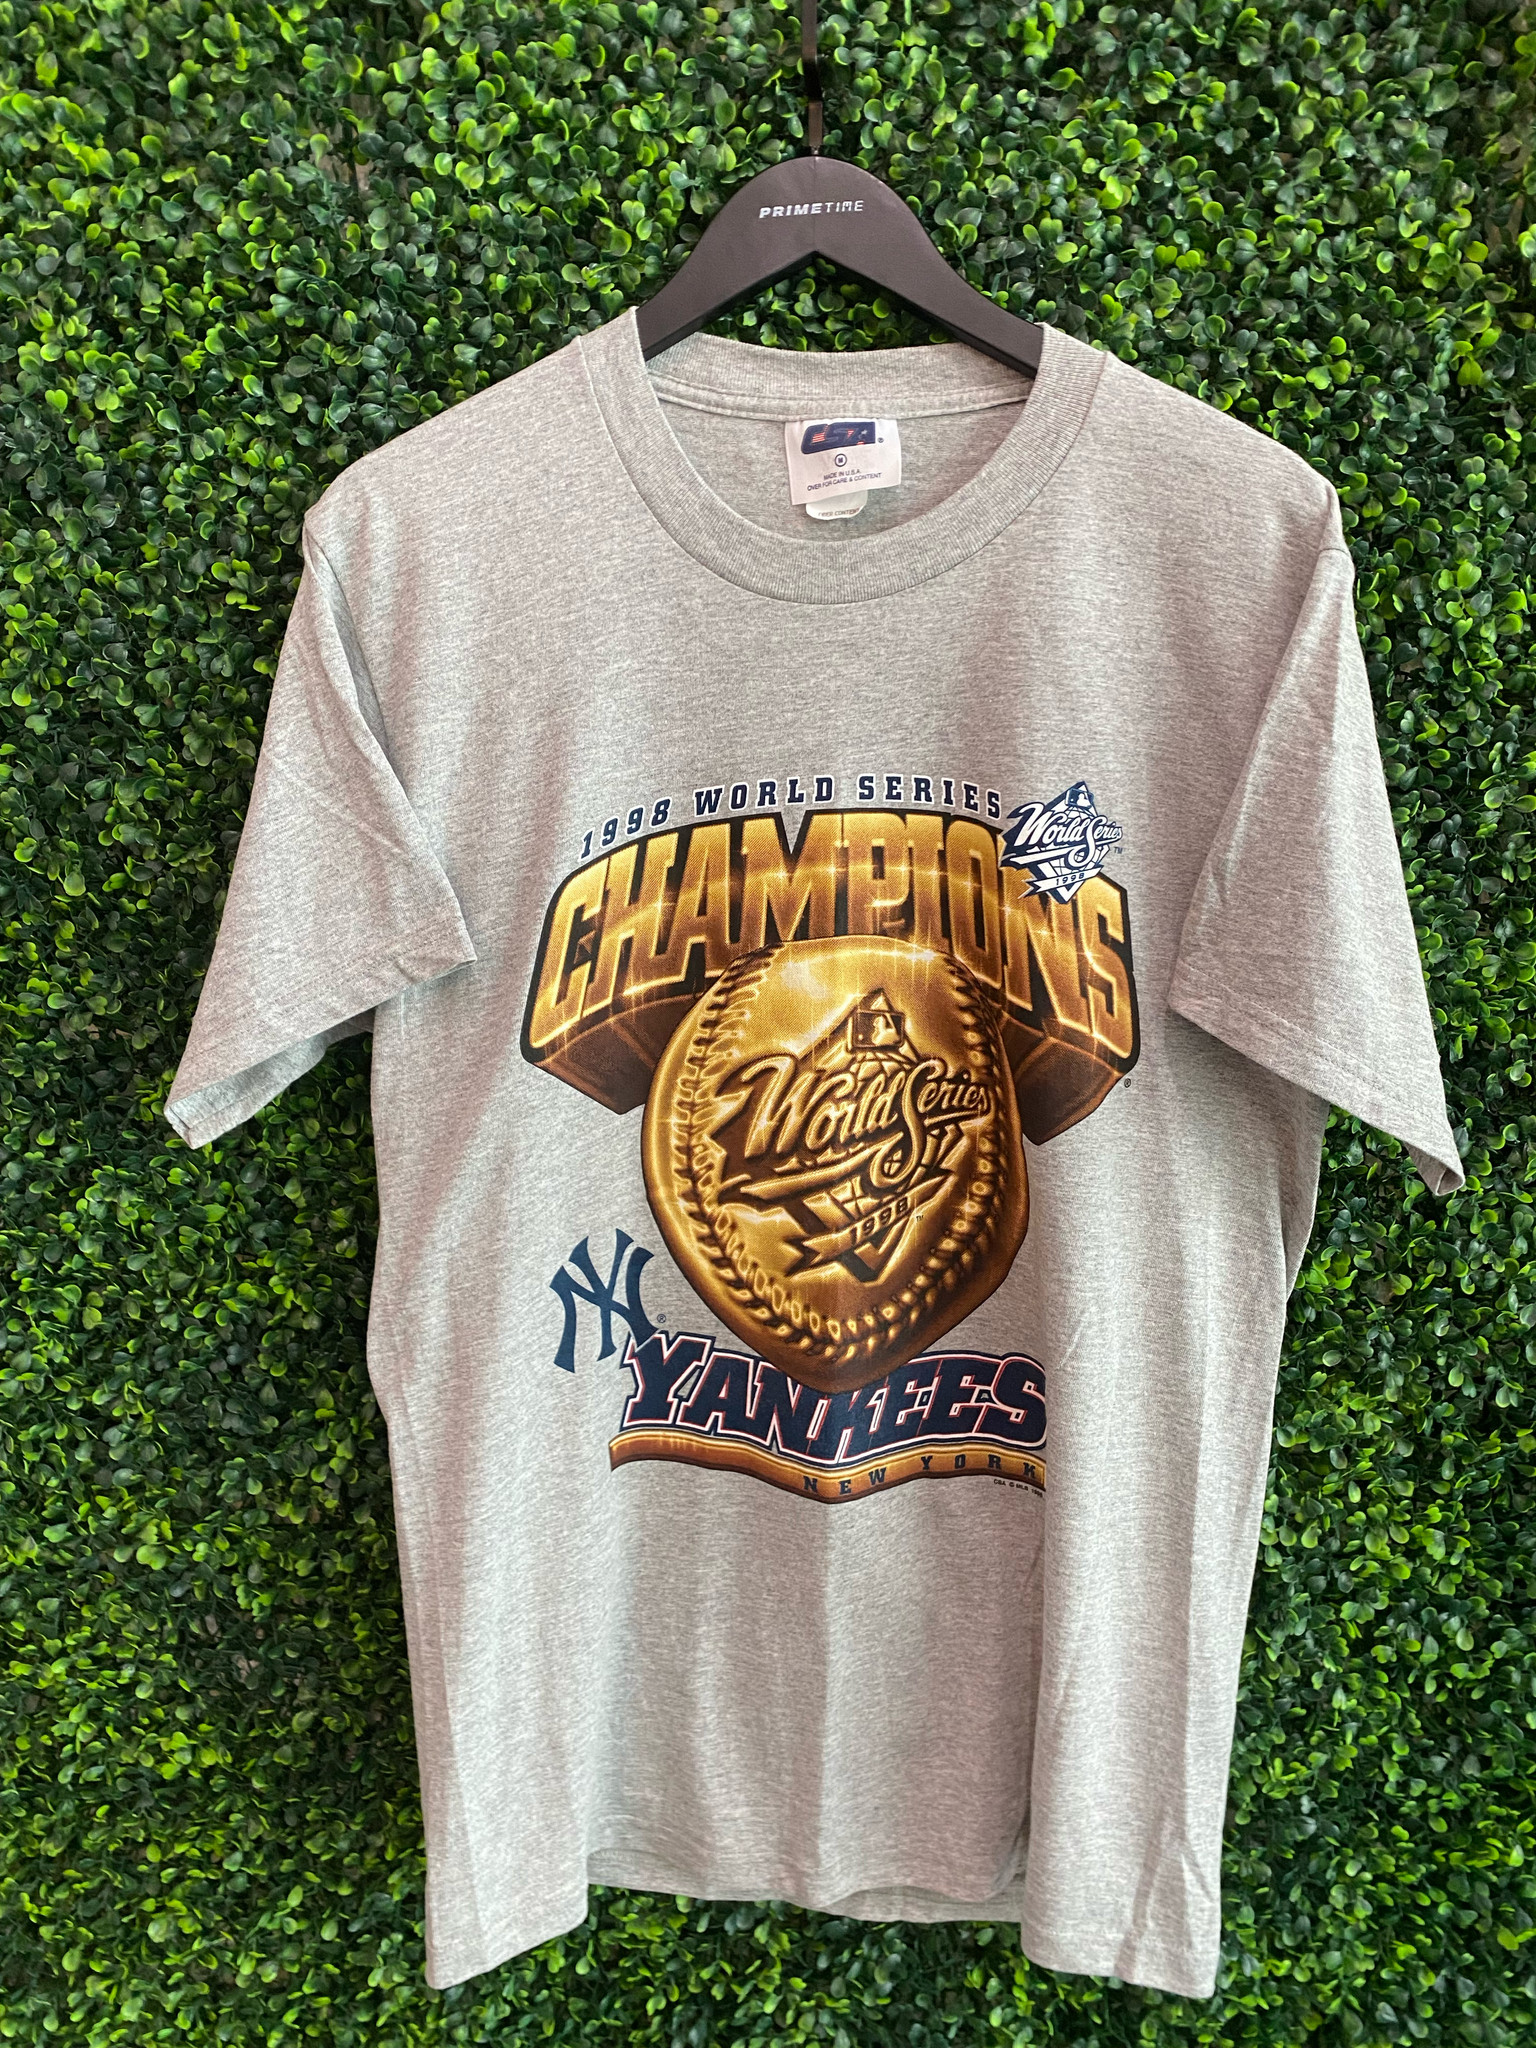 1998 New York Yankees World Series Champions Starter MLB T Shirt